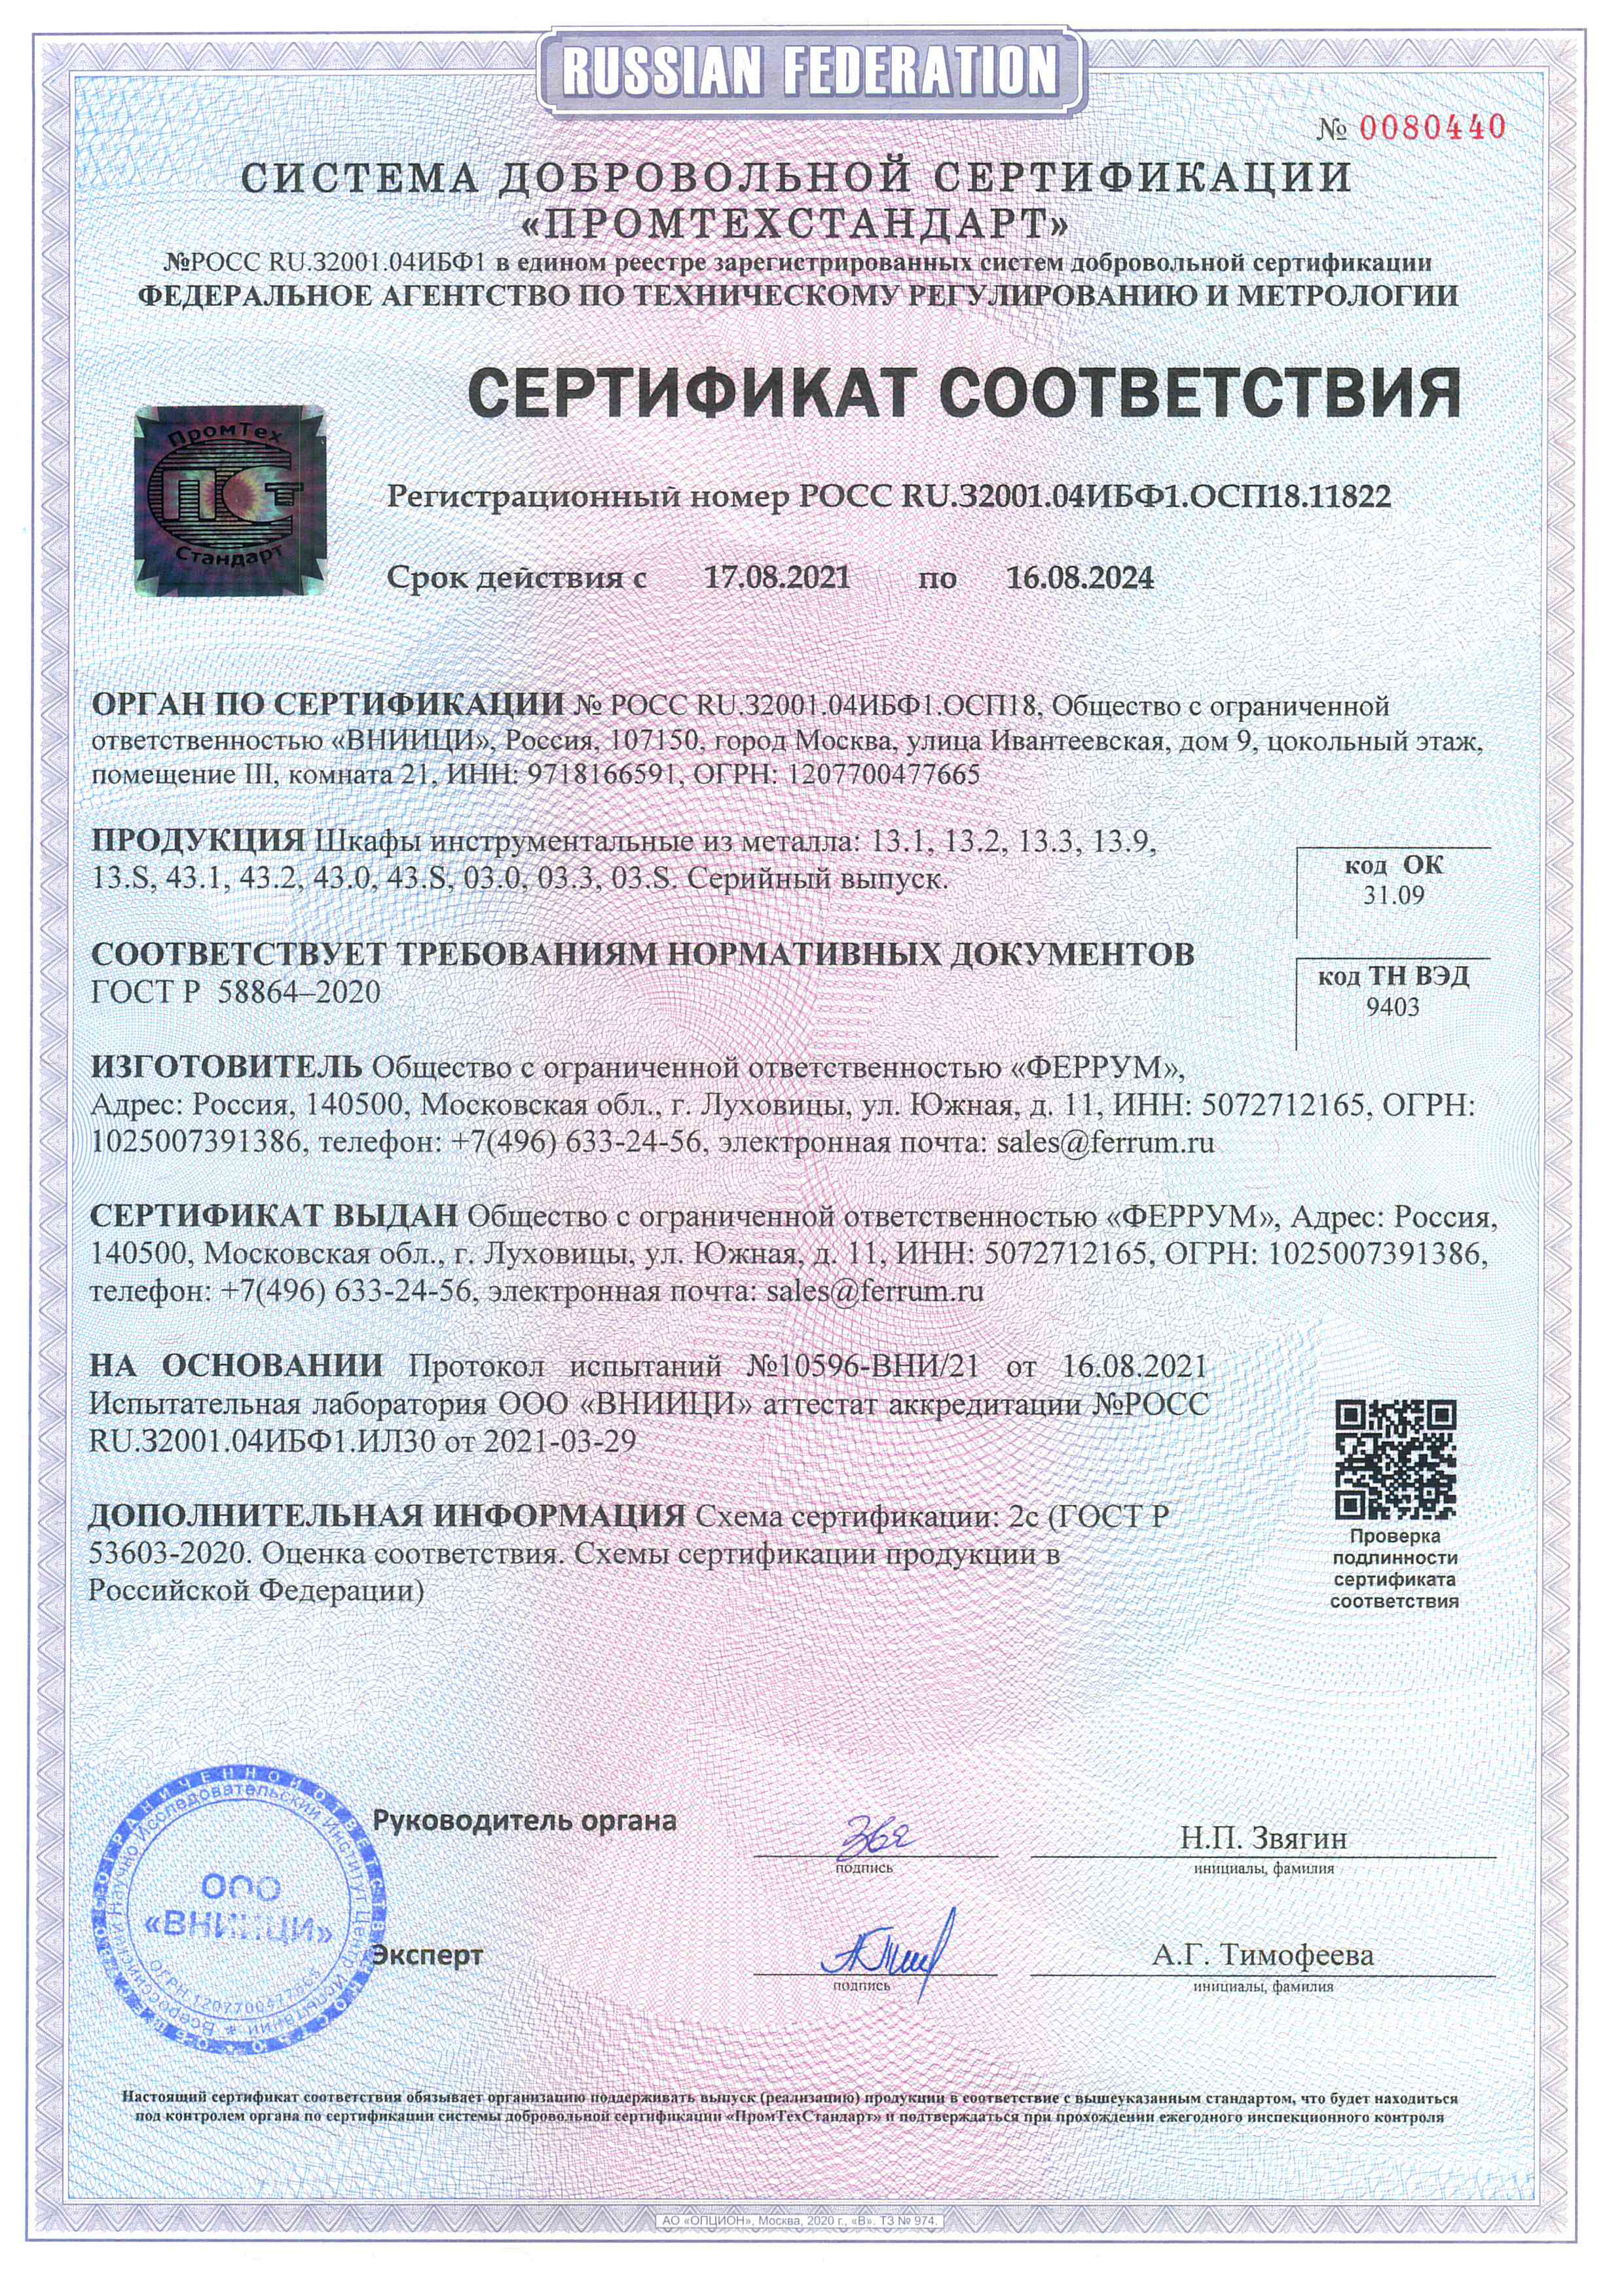 Сертификат соответсвия ГОСТ